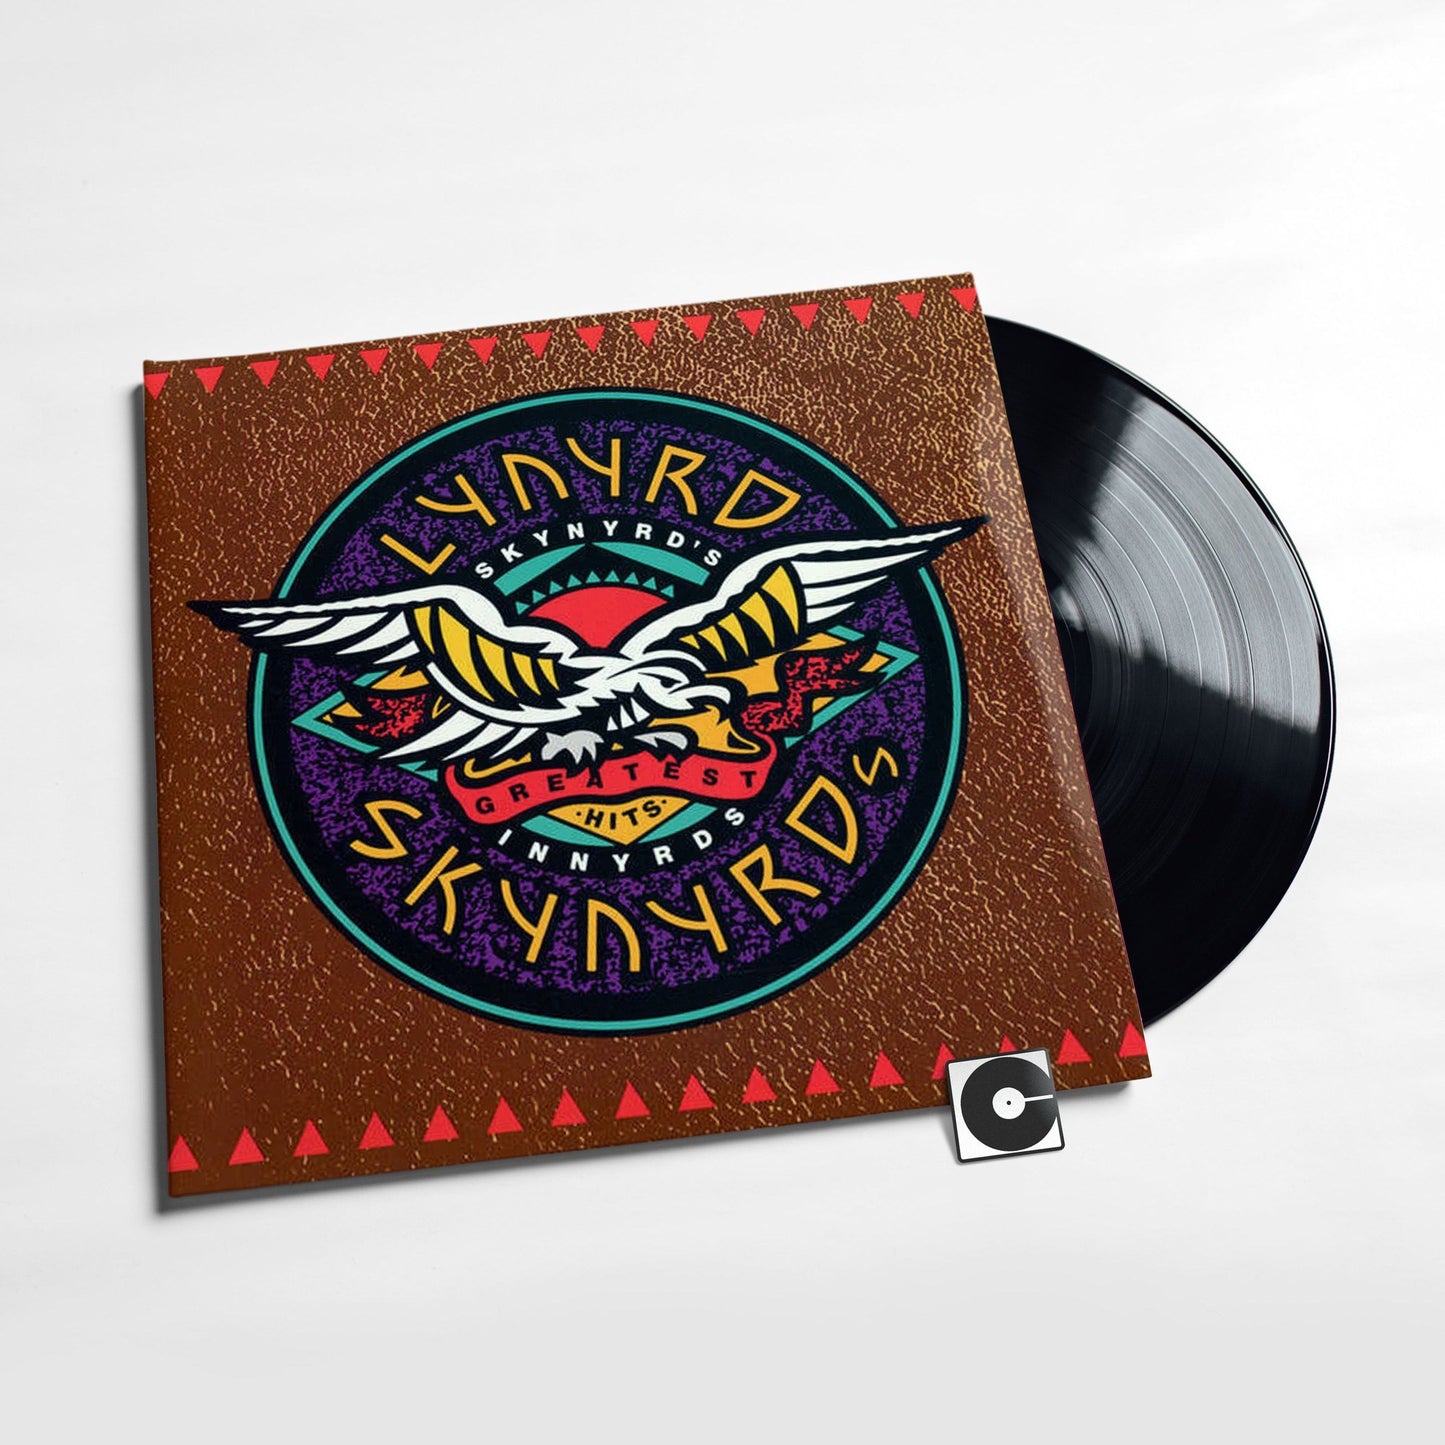 Lynyrd Skynyrd - "Lynyrds Innyrds: Their Greatest Hits"